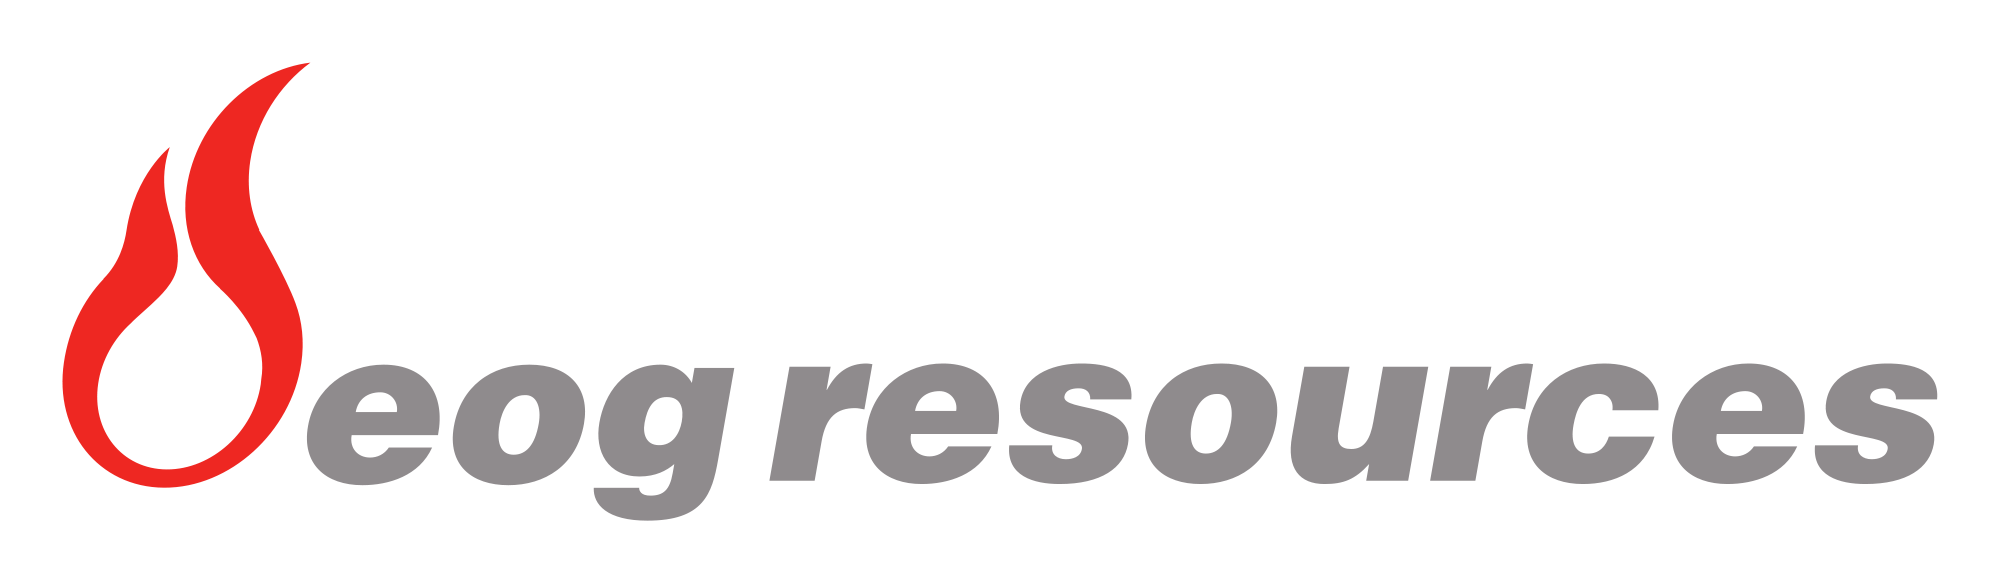 eog resources logo. abbvie in